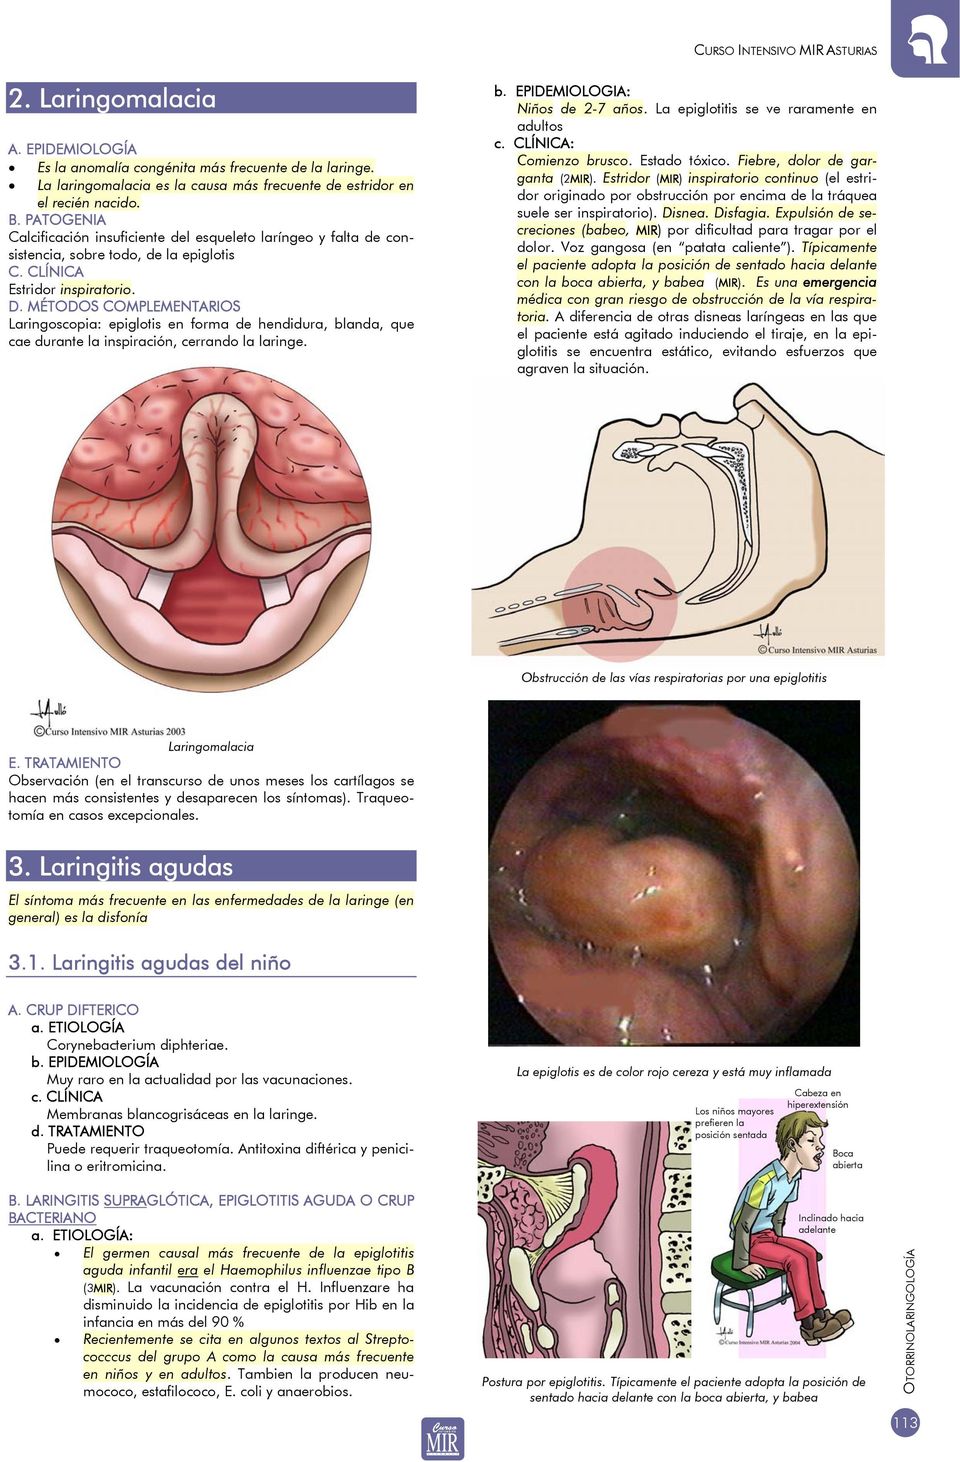 MÉTODOS COMPLEMENTARIOS Laringoscopia: epiglotis en forma de hendidura, blanda, que cae durante la inspiración, cerrando la laringe. b. EPIDEMIOLOGIA: Niños de 2-7 años.